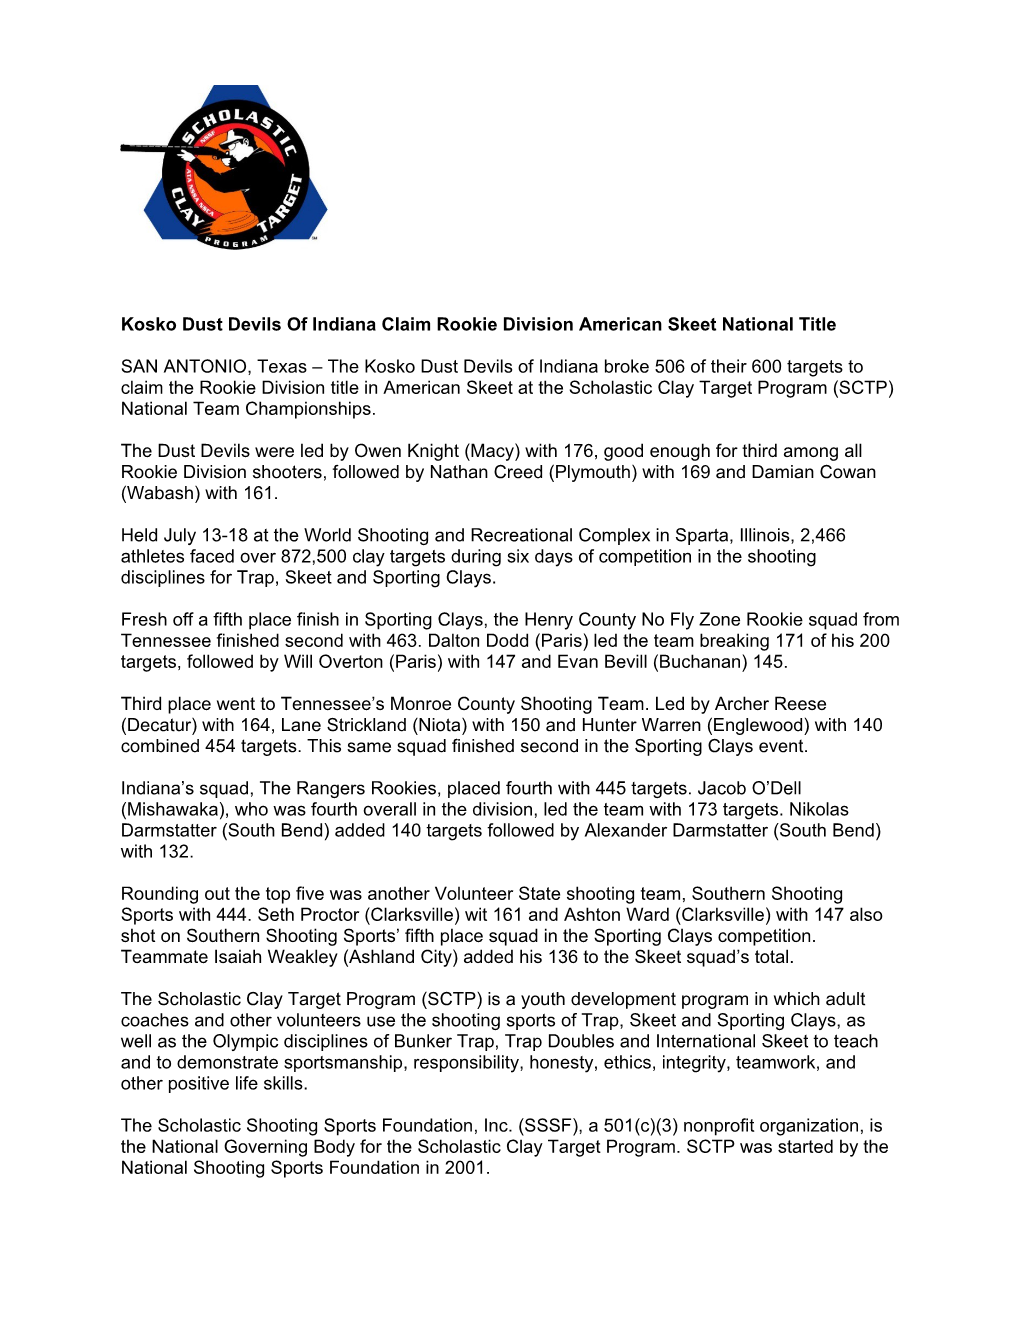 Kosko Dust Devils of Indiana Claim Rookie Division American Skeet National Title